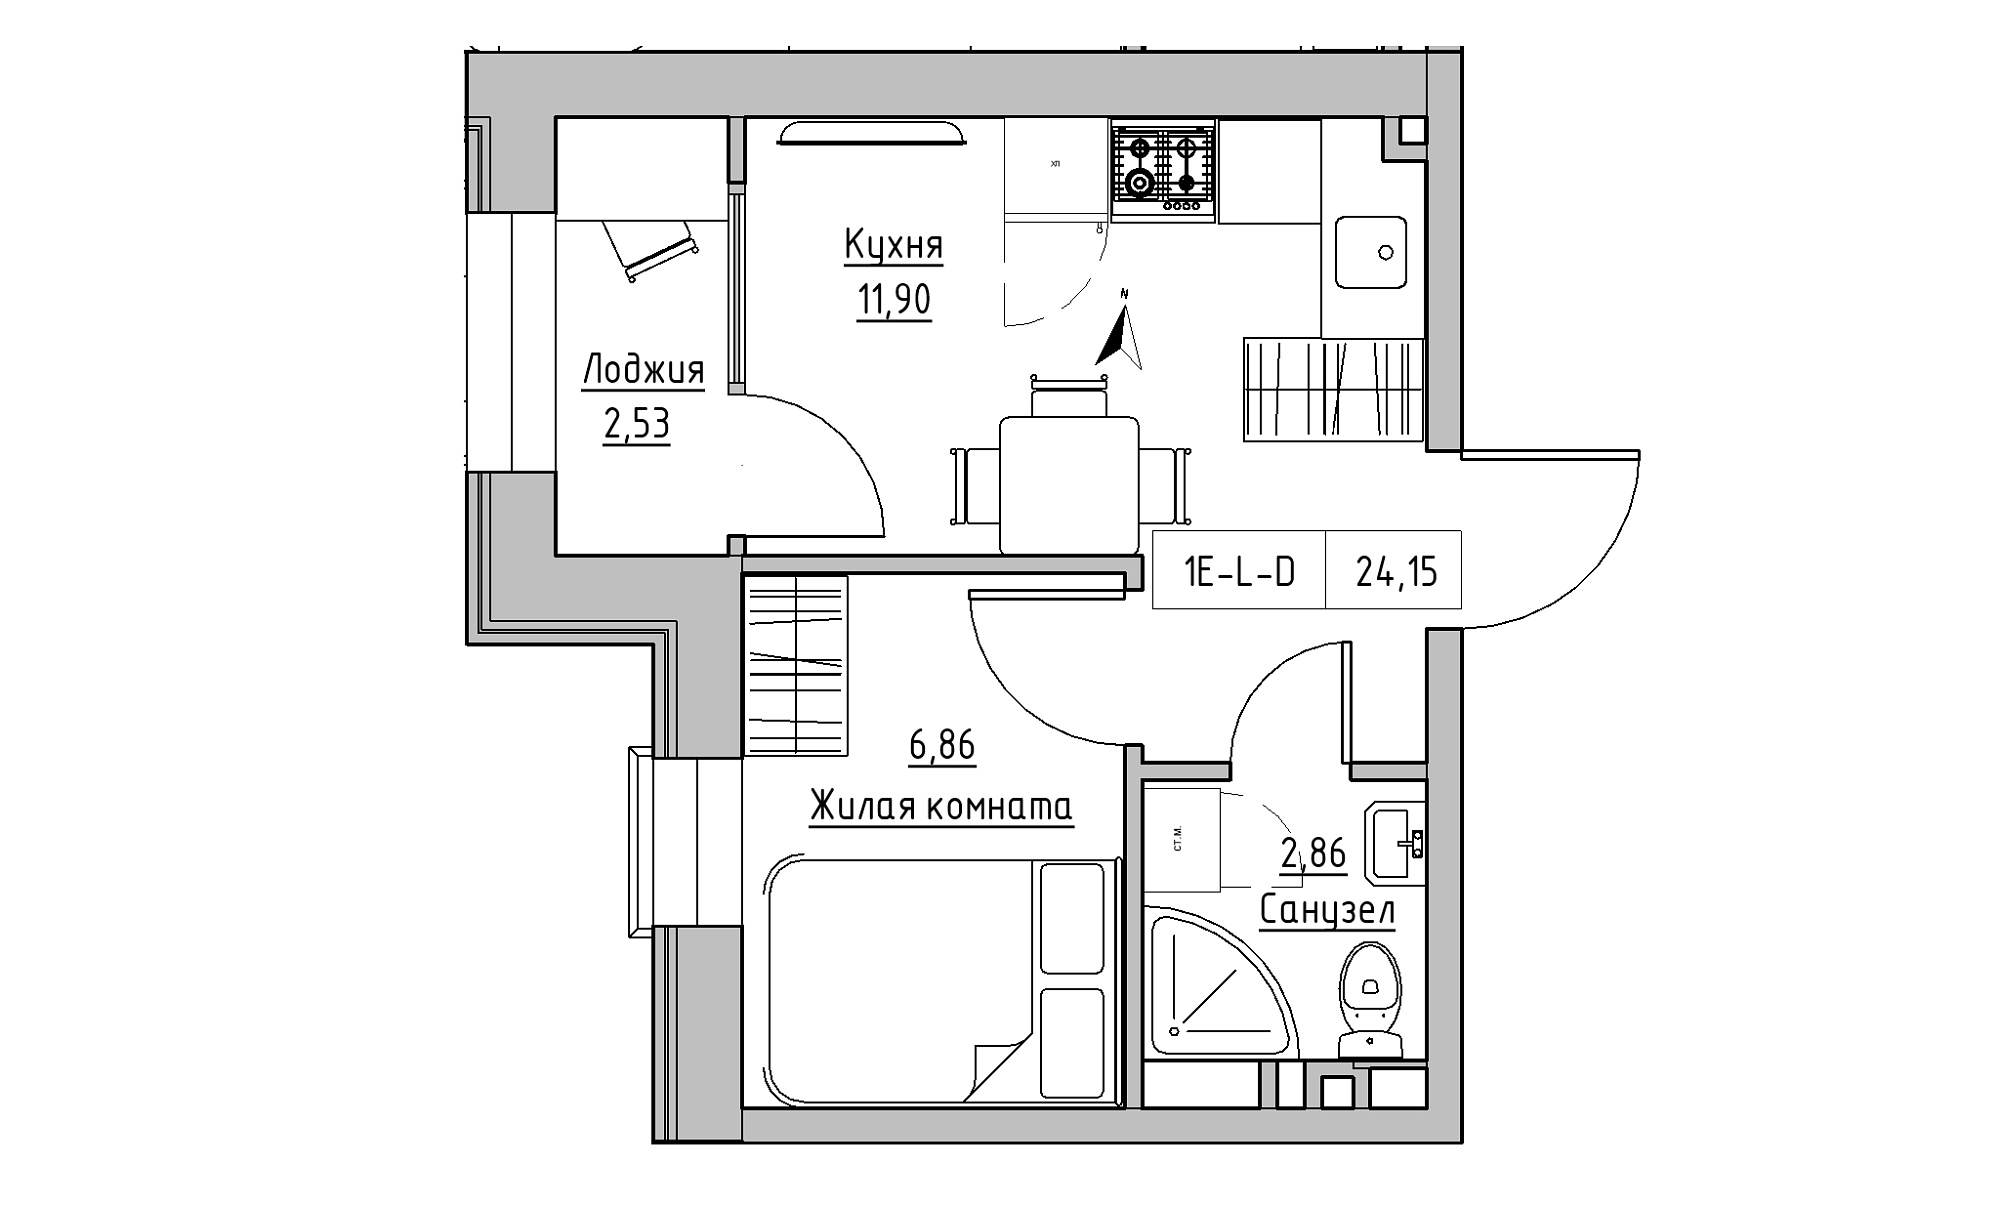 Планування 1-к квартира площею 24.15м2, KS-023-01/0001.